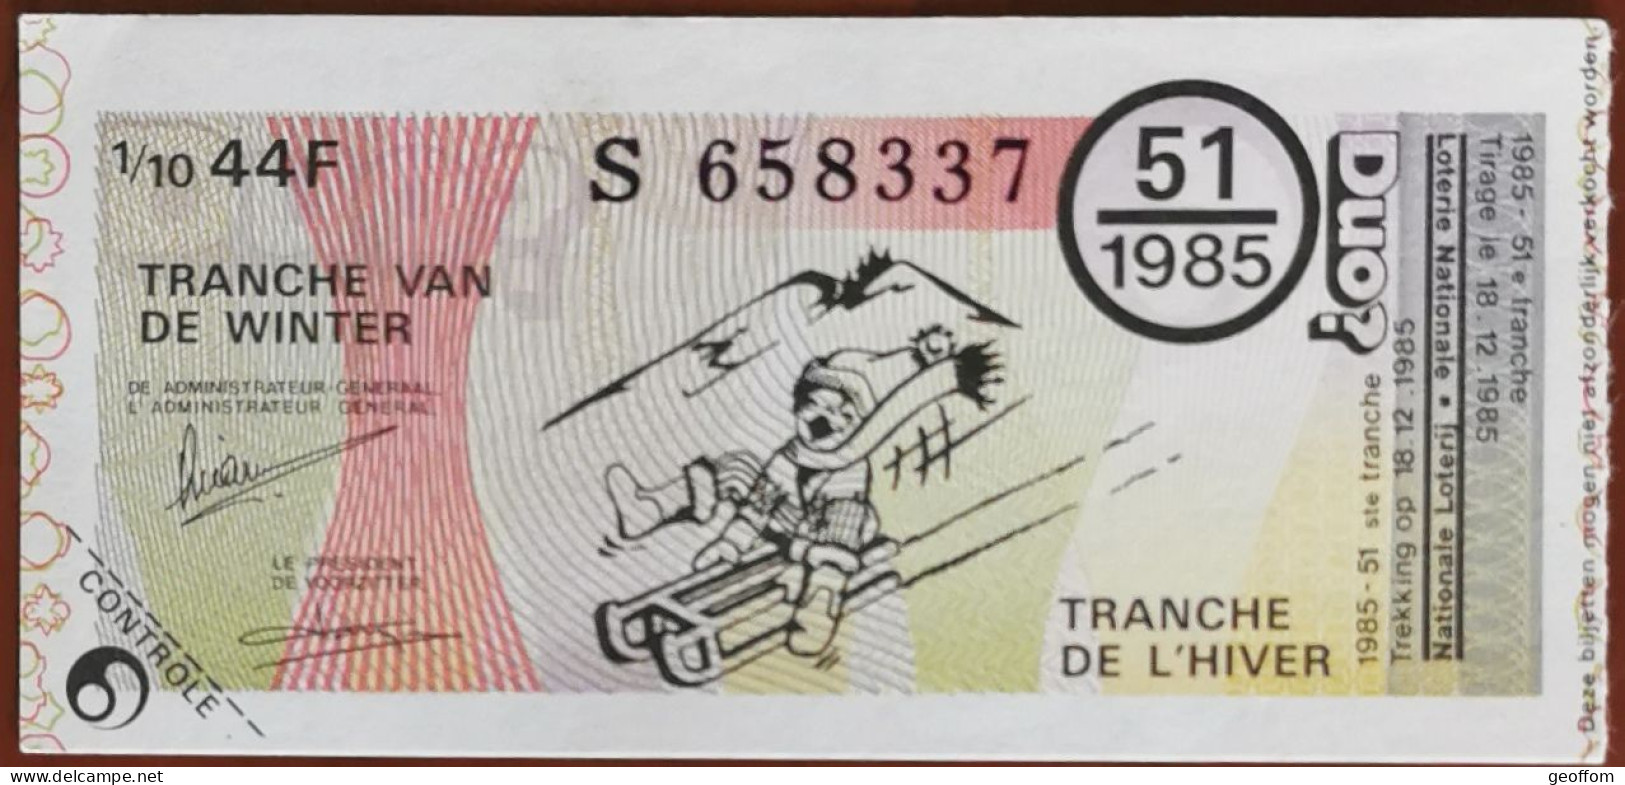 Billet De Loterie Nationale Belgique 1985 51e Tranche De L'Hiver - 18-12-1985 - Billetes De Lotería